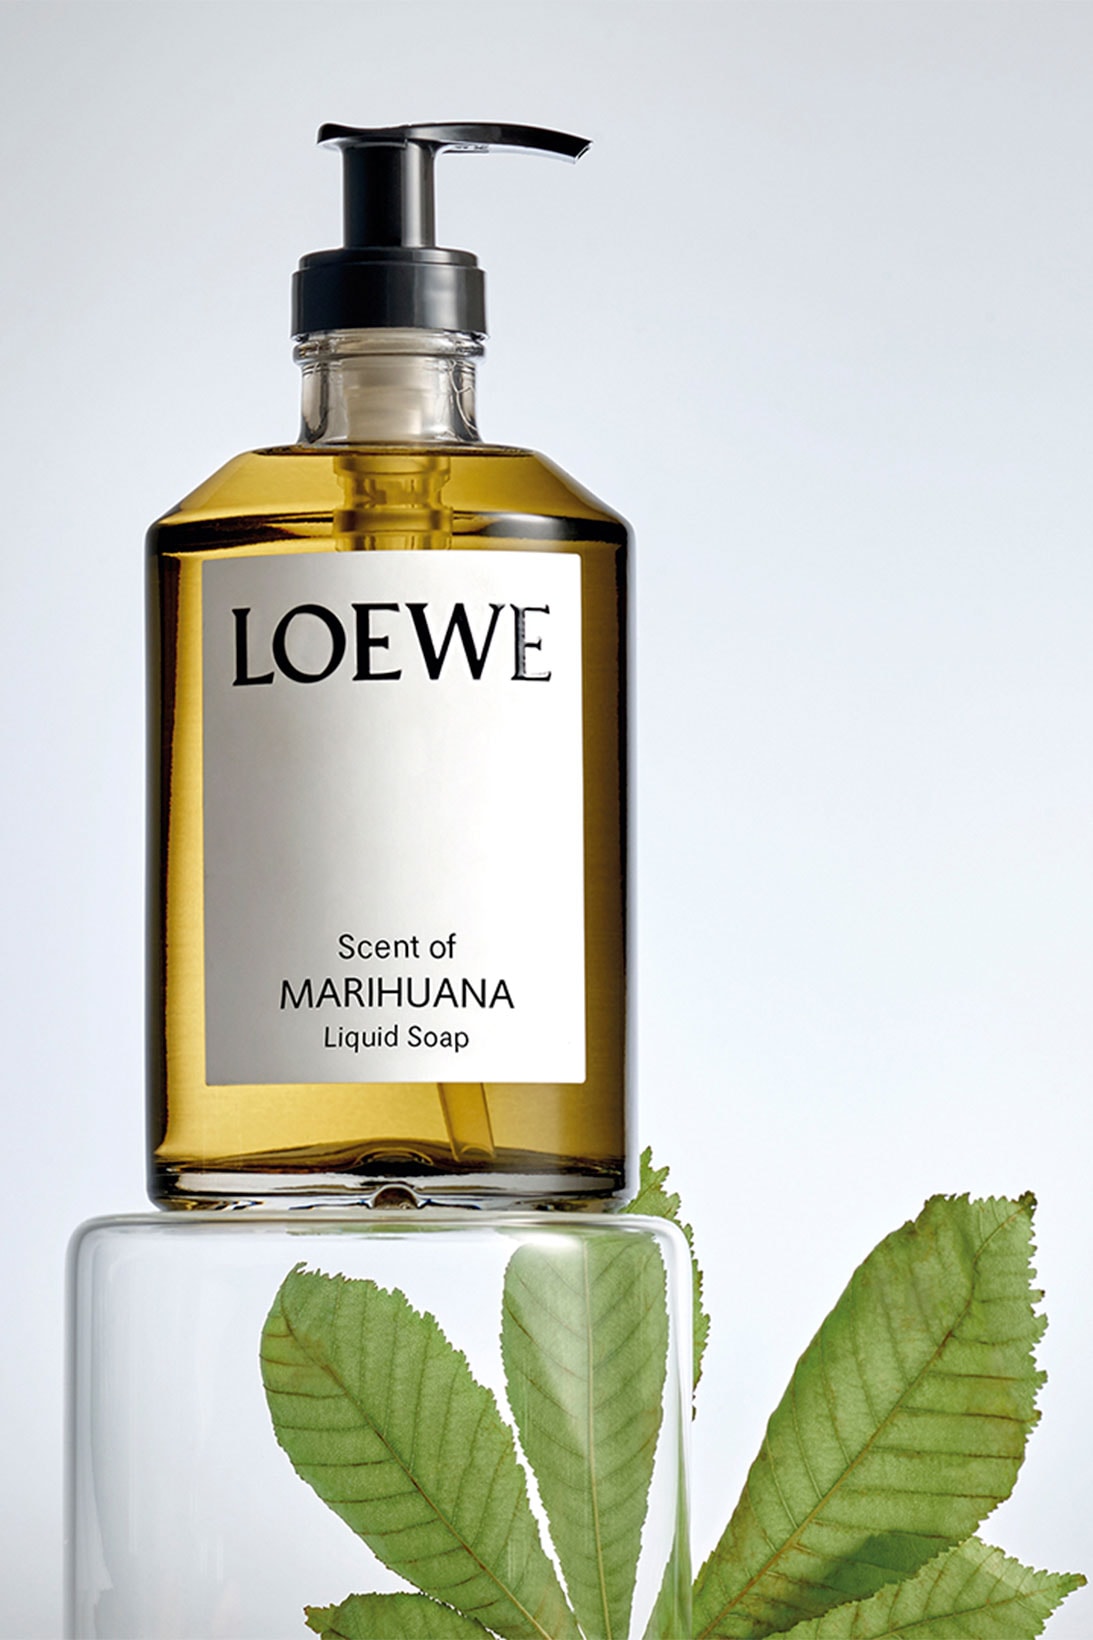 Loewe liquid soap Oregano scent